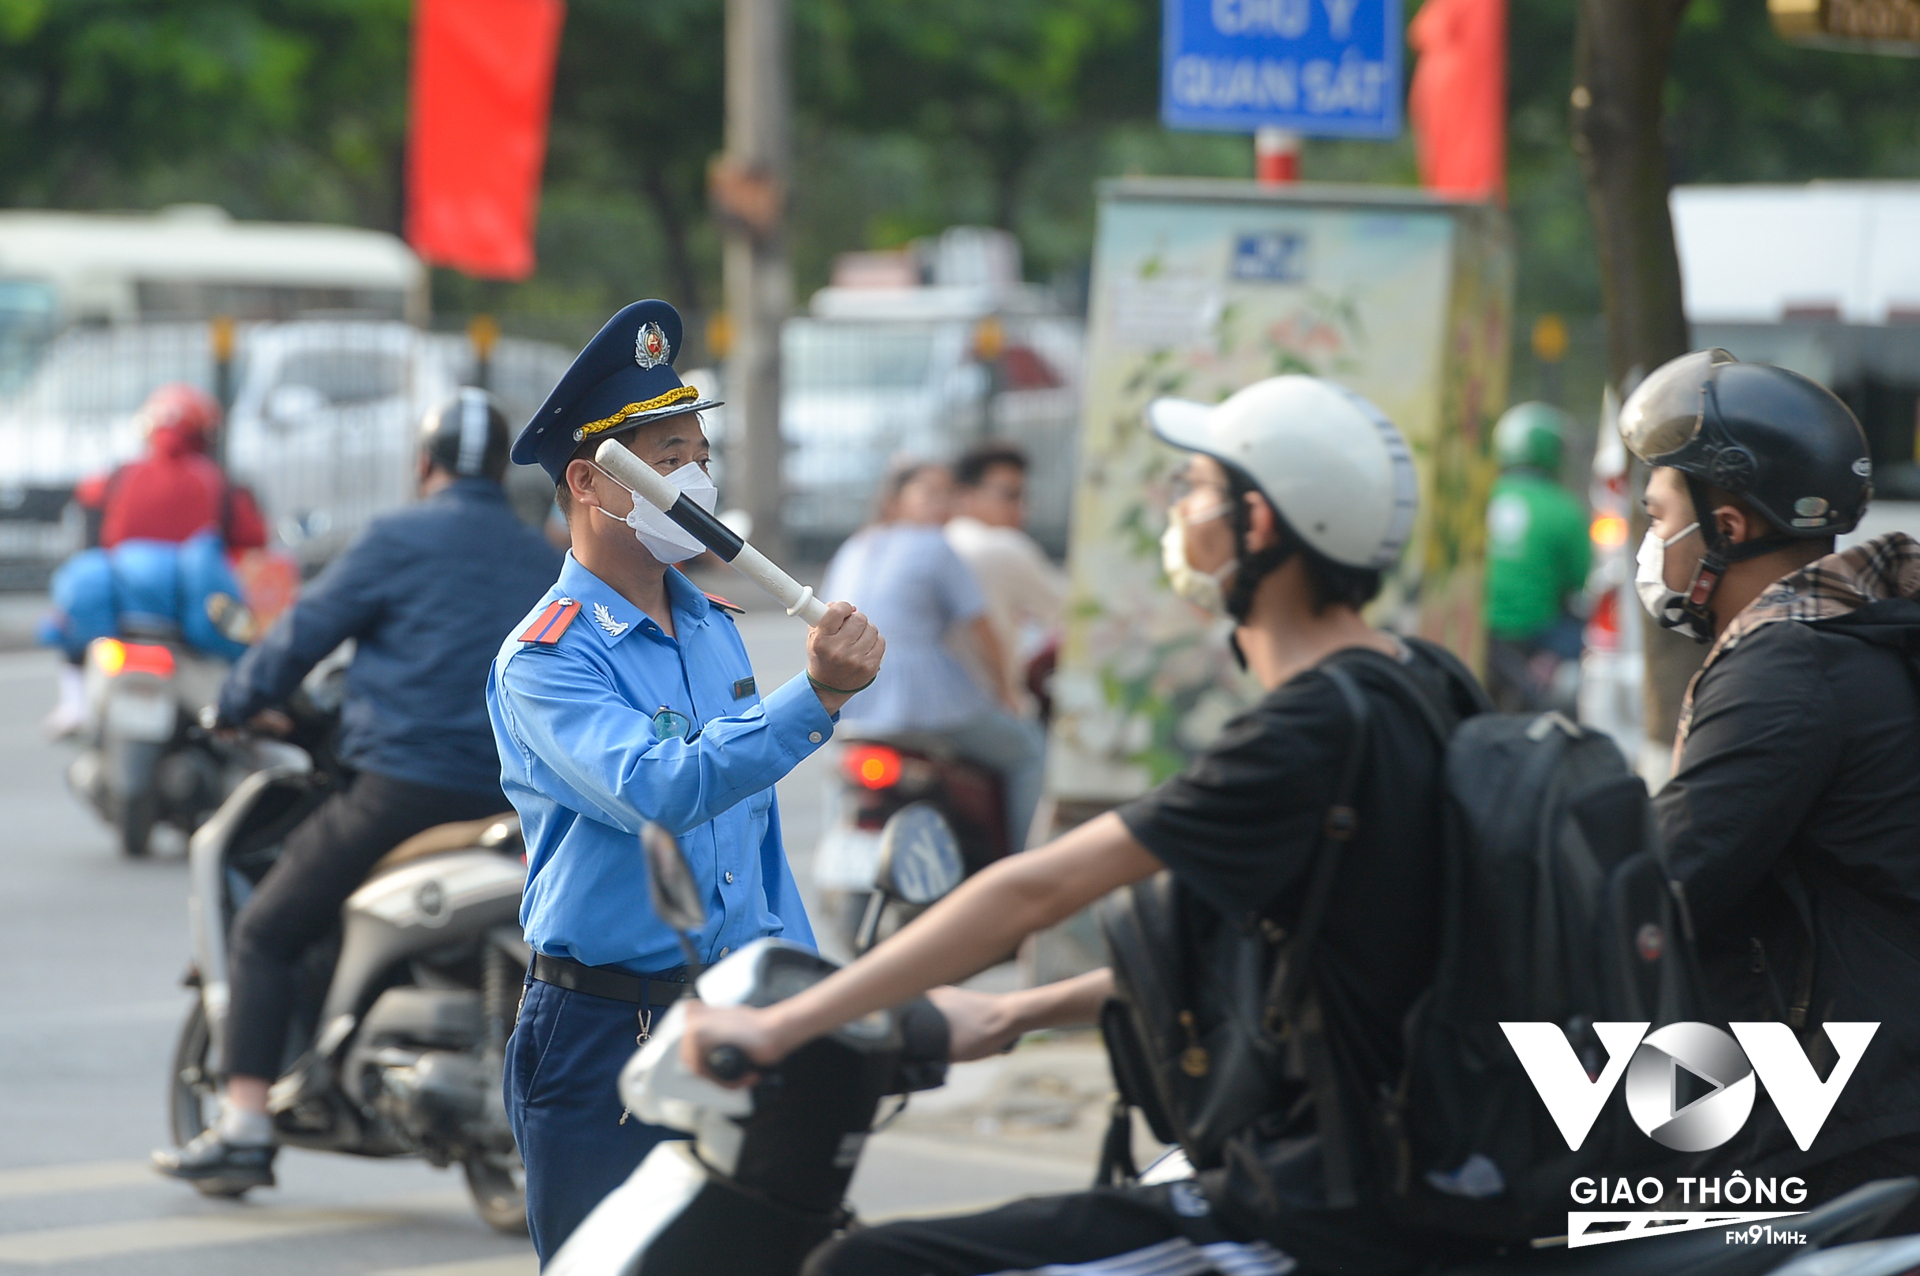 Lực lượng Thanh tra giao thông Hà Nội cũng sẵn sàng lực lượng, phối hợp cùng lực lượng CSGT triển khai phương án phân luồng, điều tiết giao thông, chống ùn tắc.